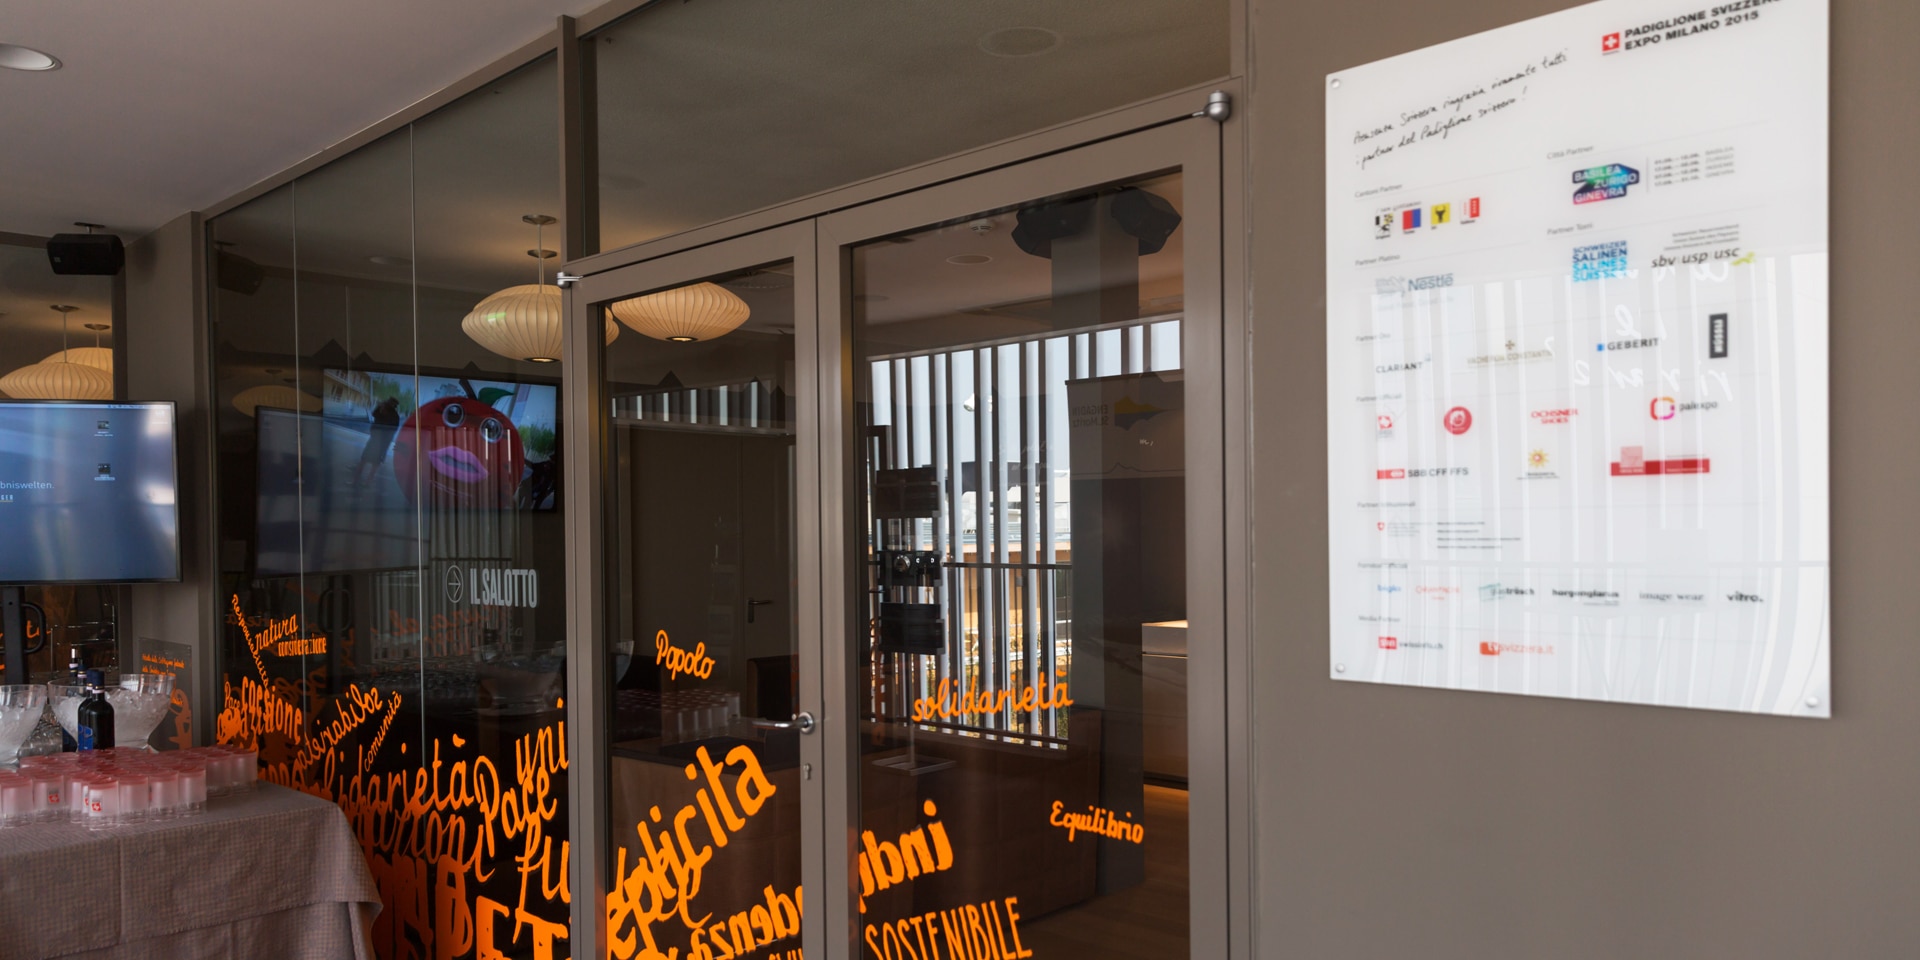  Una tabella bianca, all’entrata di un edificio, espone tutti i partner del padiglione svizzero all'Esposizione Universale di Milano 2015.